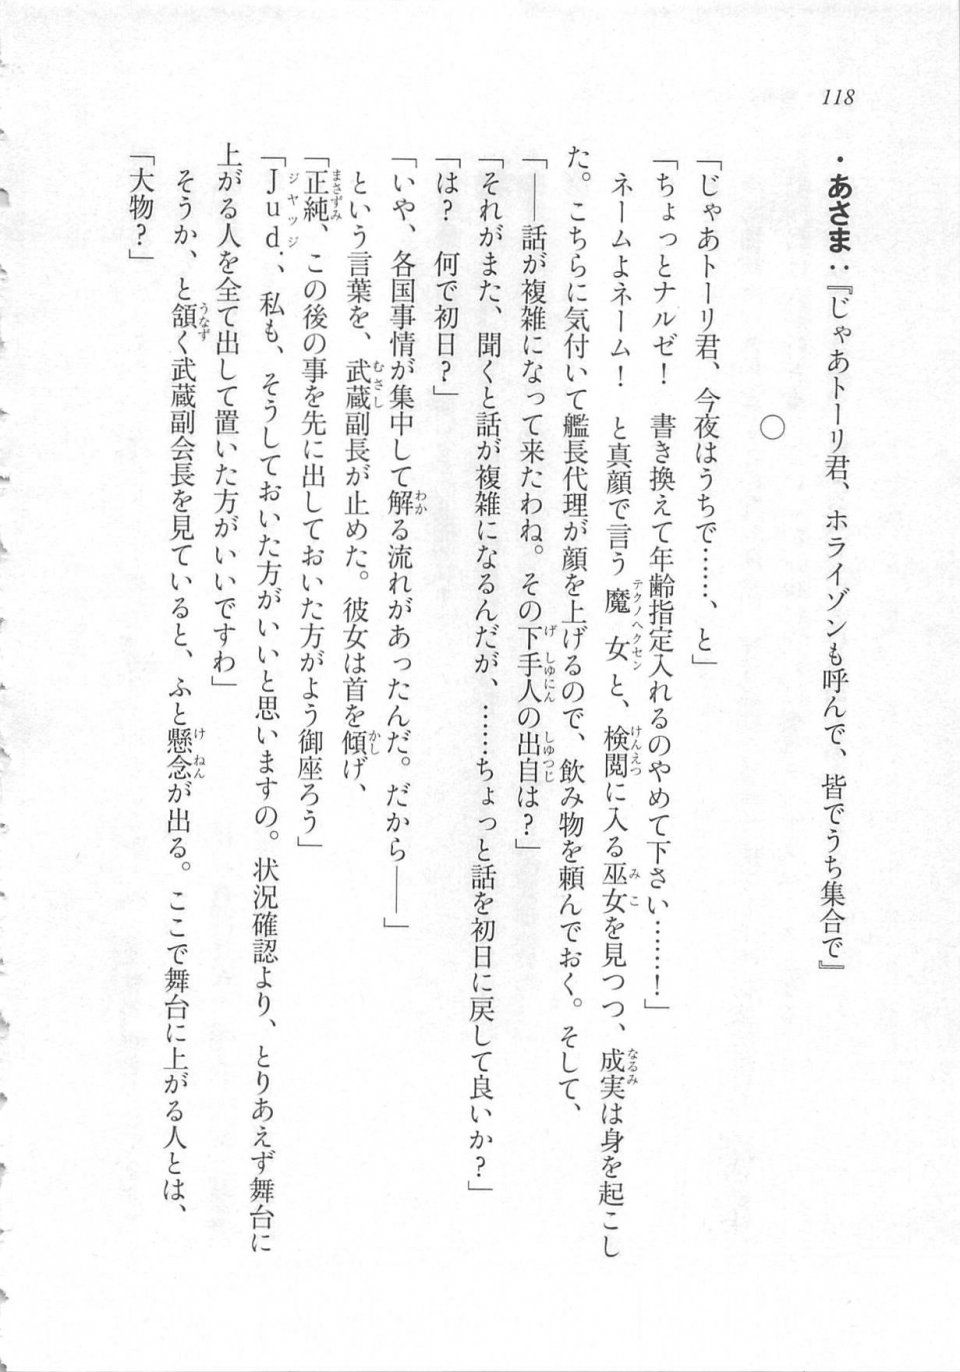 Kyoukai Senjou no Horizon LN Sidestory Vol 3 - Photo #122